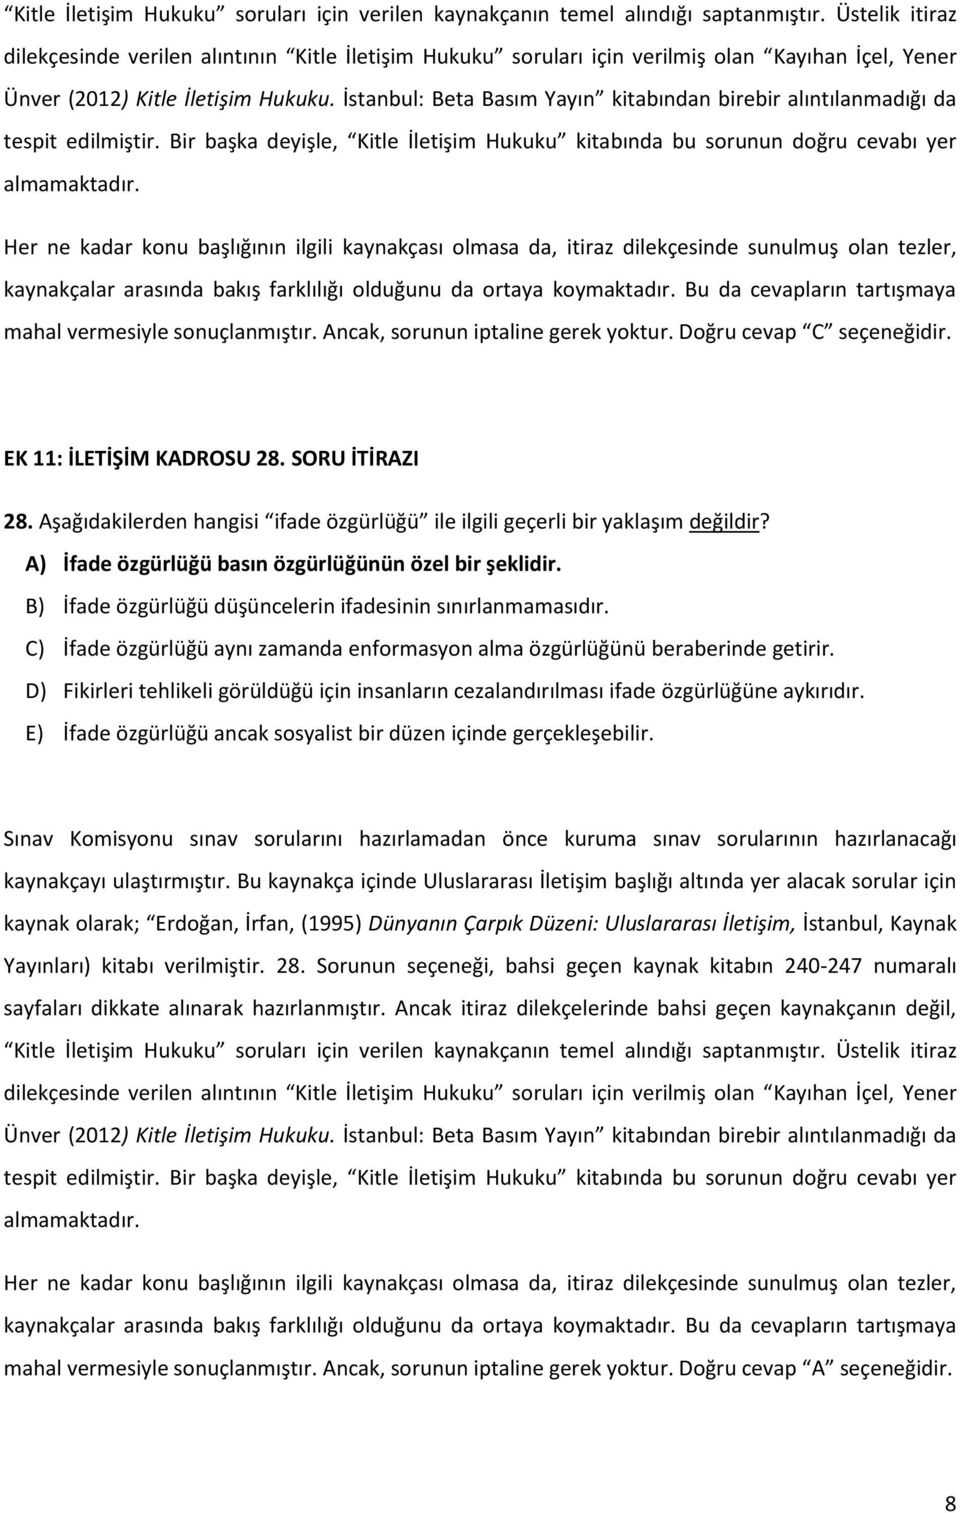 İstanbul: Beta Basım Yayın kitabından birebir alıntılanmadığı da tespit edilmiştir. Bir başka deyişle, Kitle İletişim Hukuku kitabında bu sorunun doğru cevabı yer almamaktadır.